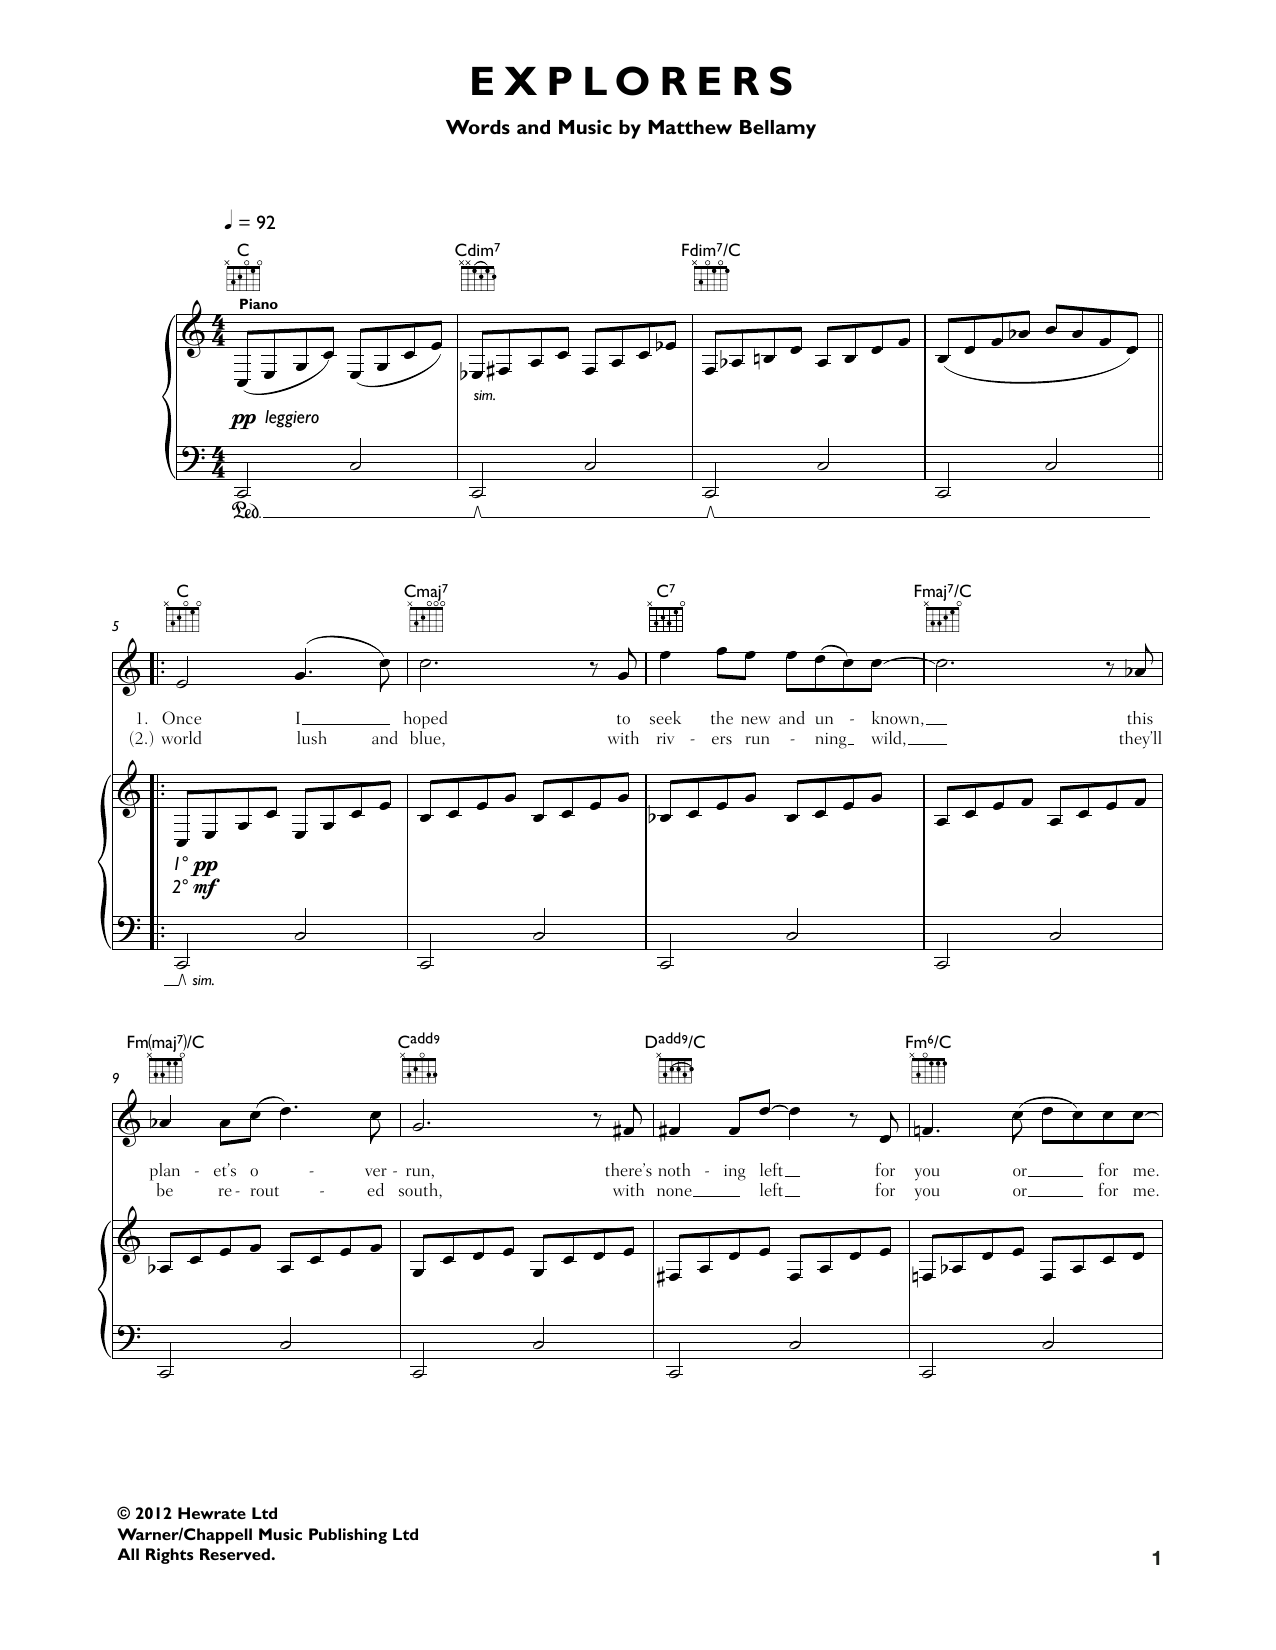 Muse "Explorers" Sheet Music Notes | Download Printable PDF Score 164729